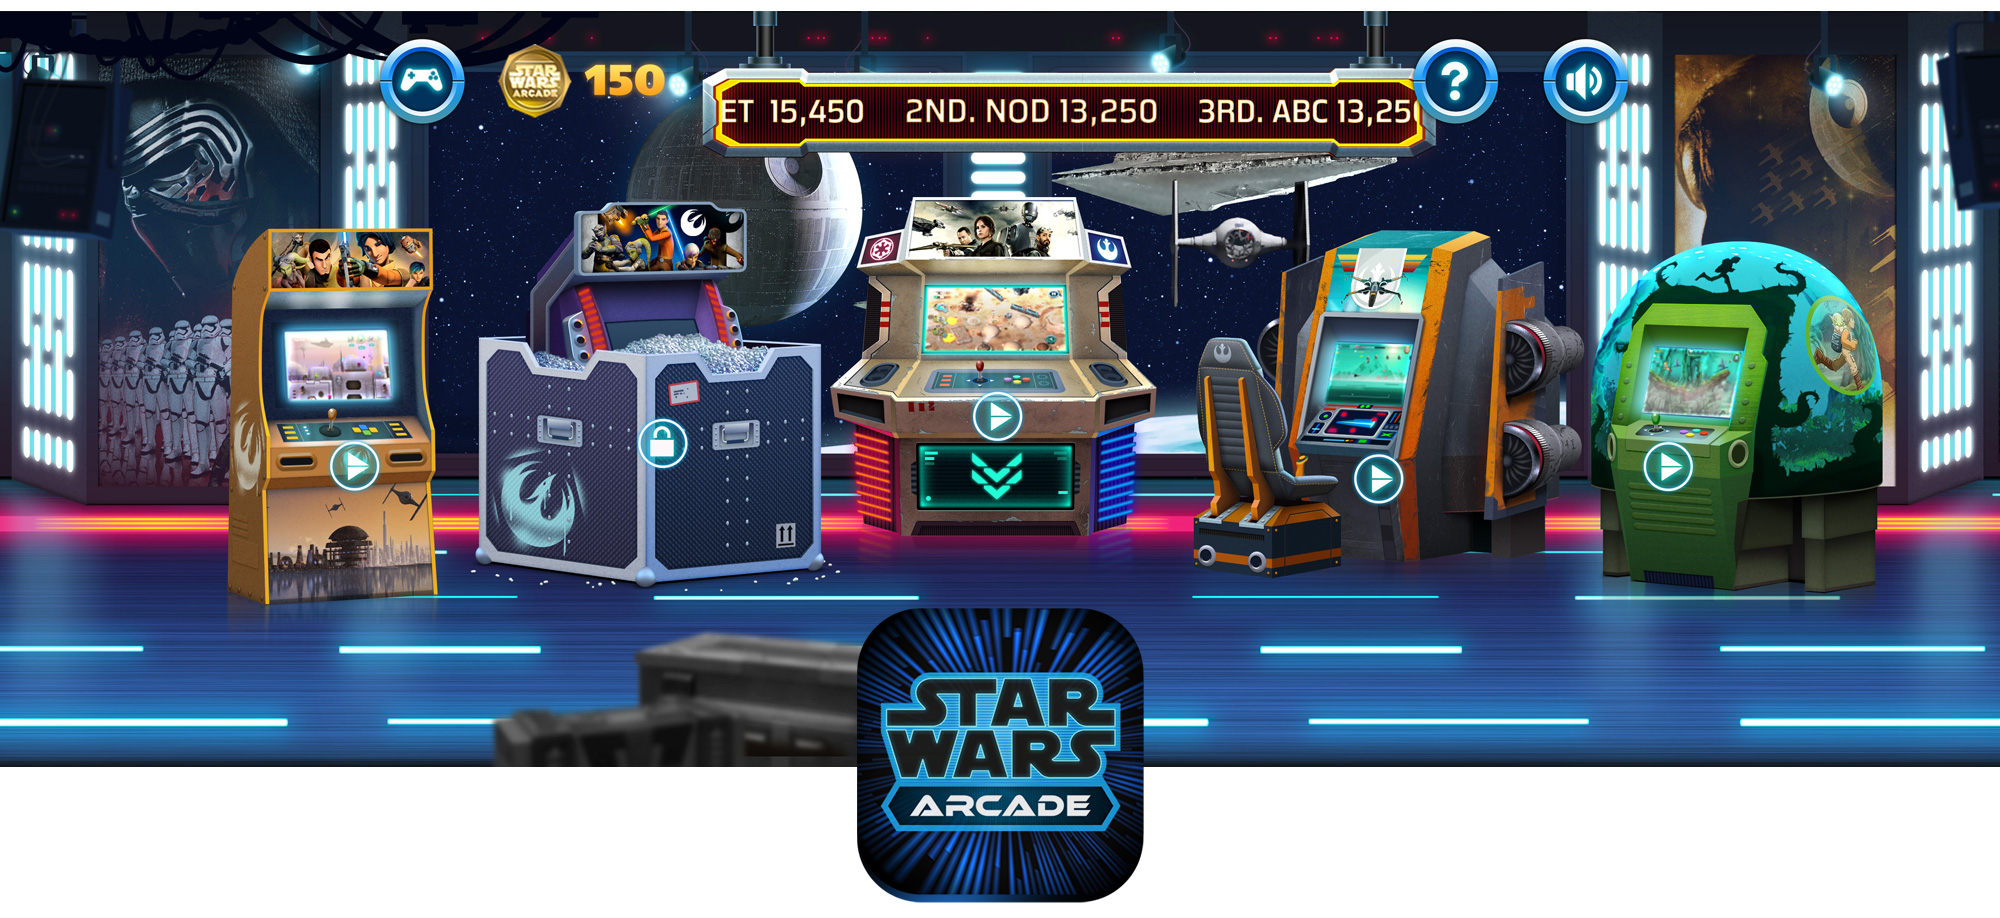 Star Wars Arcade